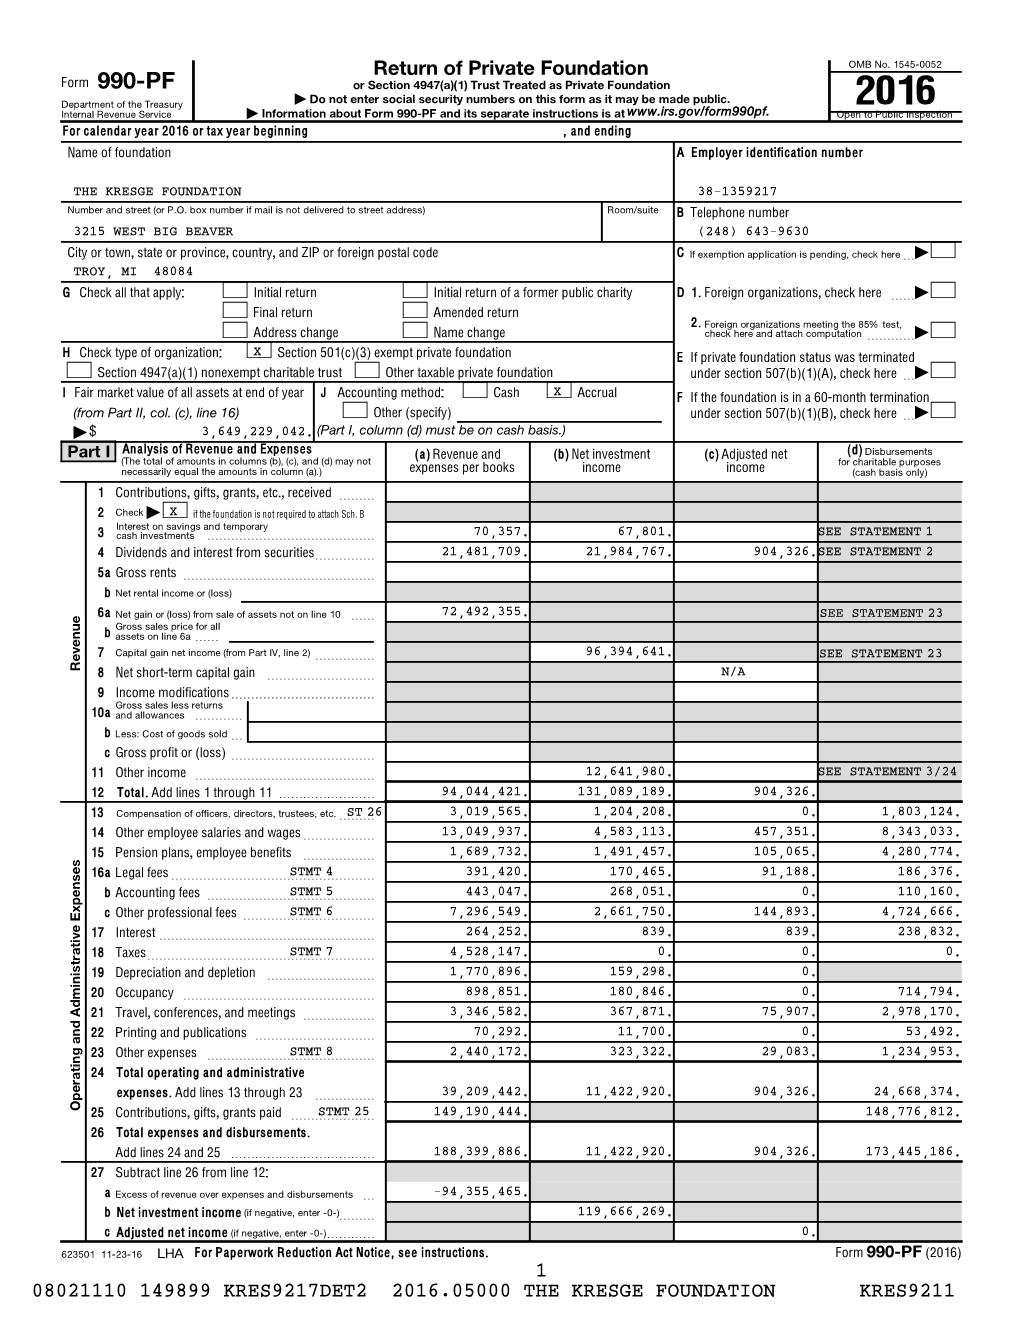 Annual Tax Return, Form 990-PF